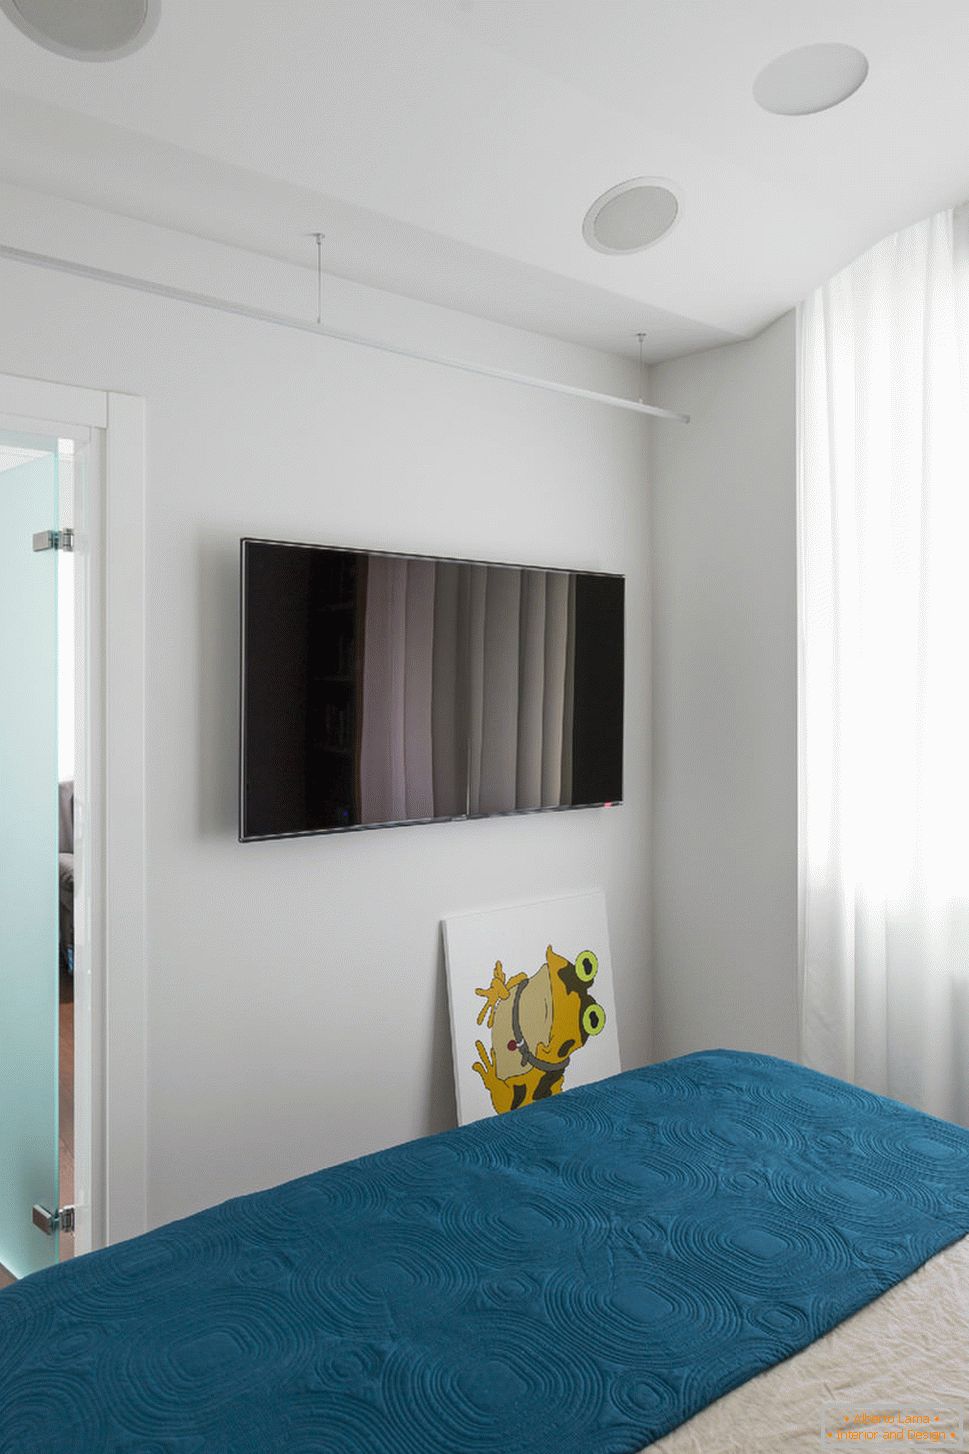 Camera da letto in appartamento con illuminazione controllata